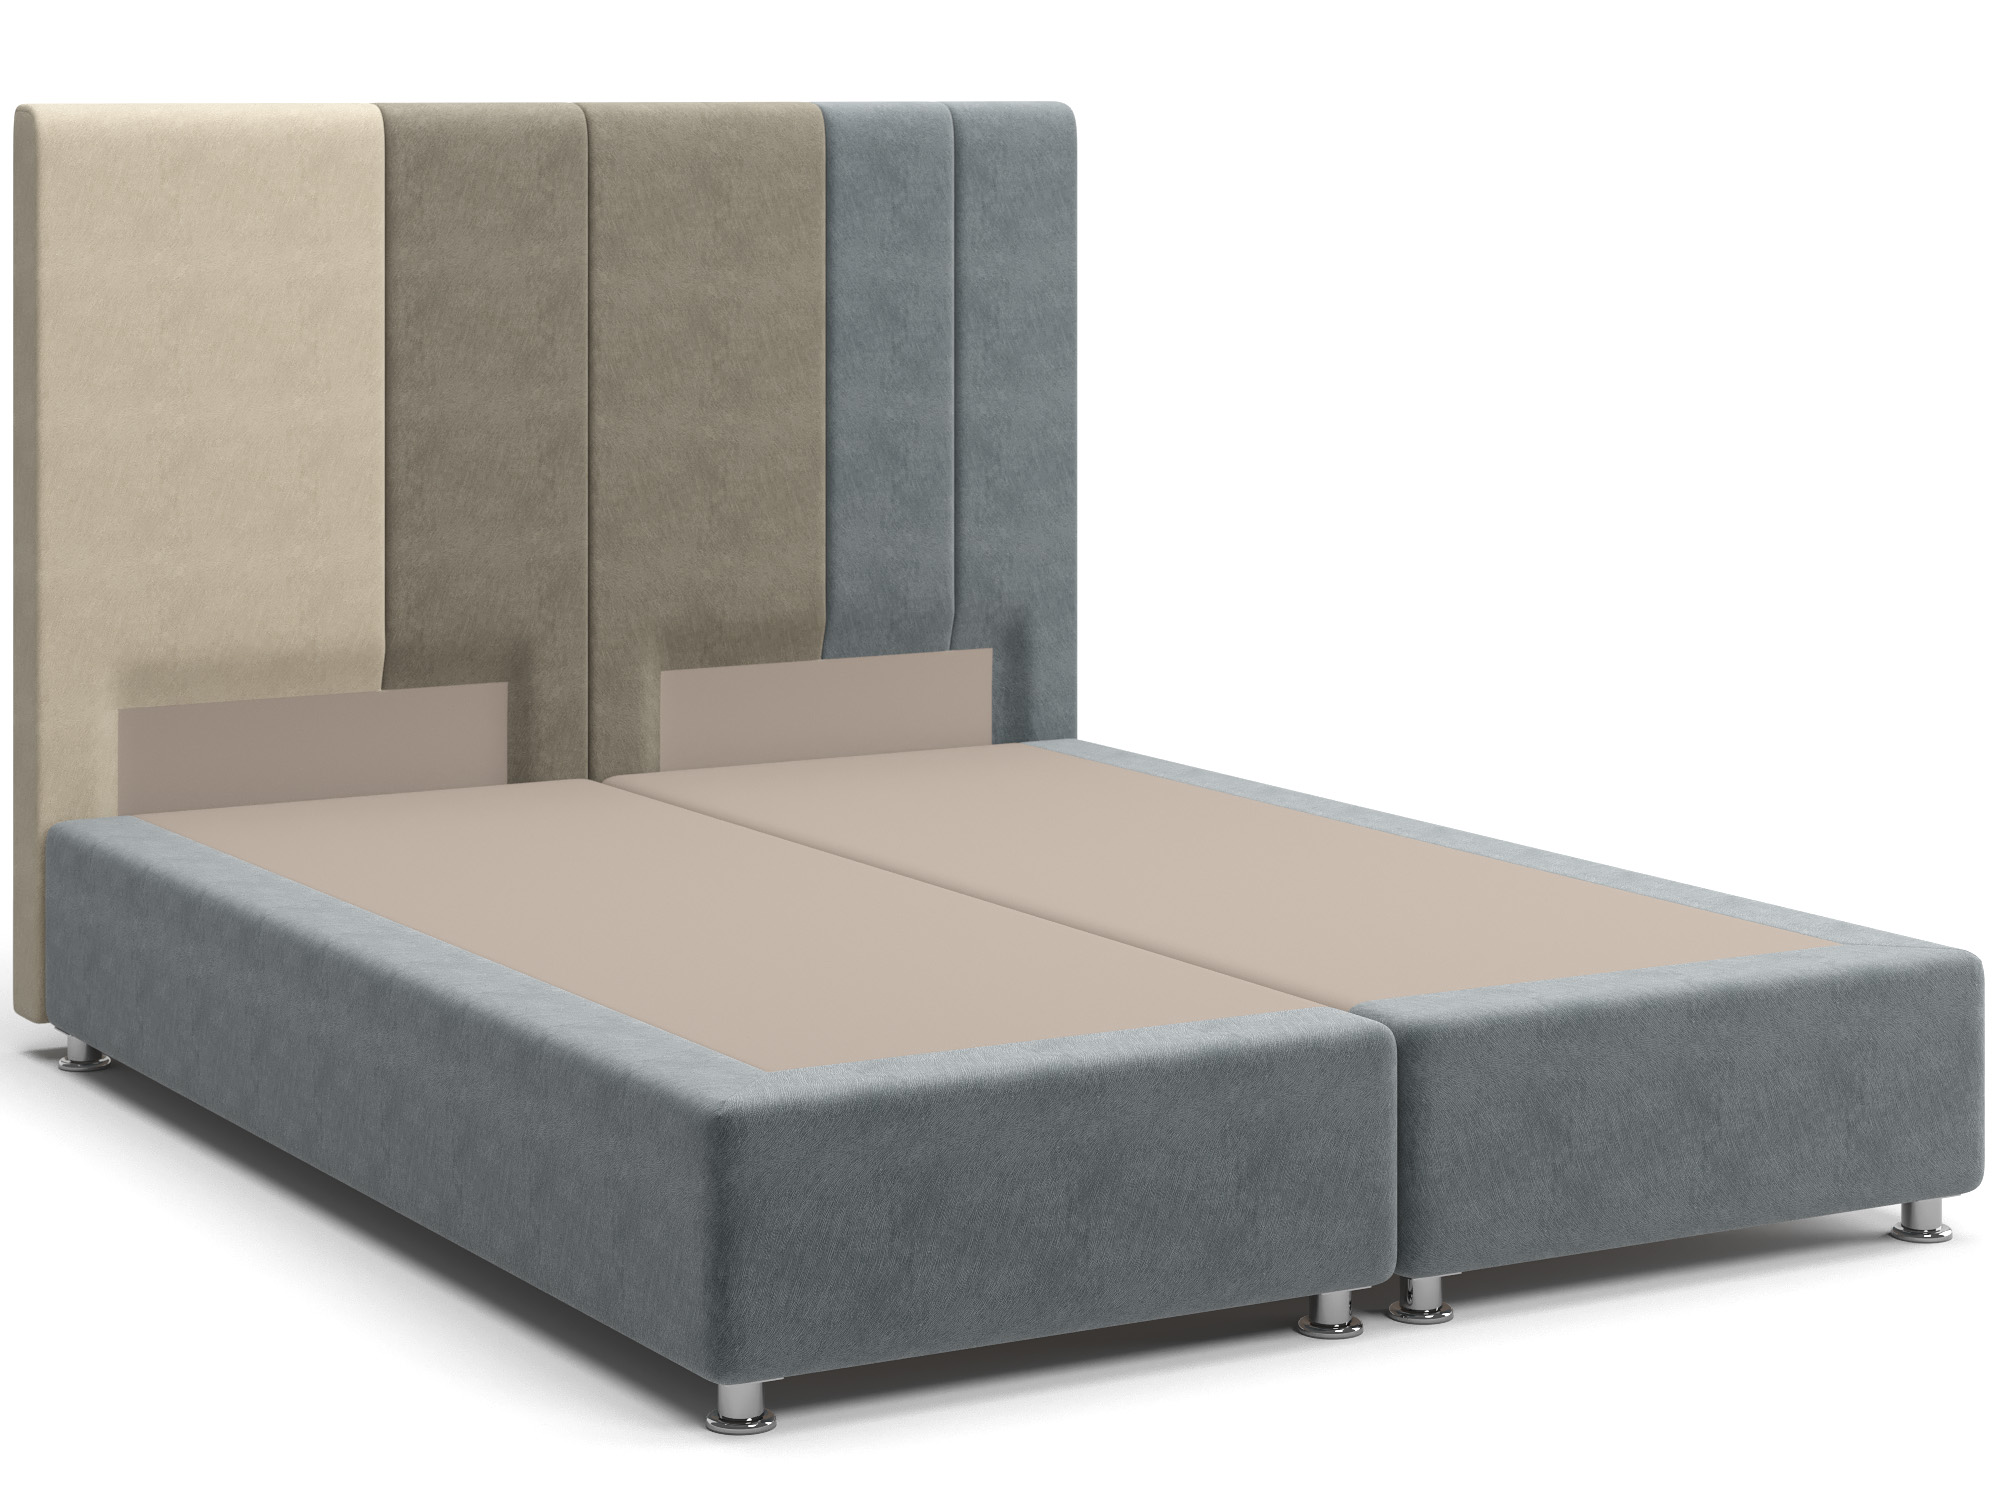 Интерьерная кровать Скала (160х200) Серый, Коричневый, Массив, ДСП кровать скала 180х200 серый бежевый лдсп